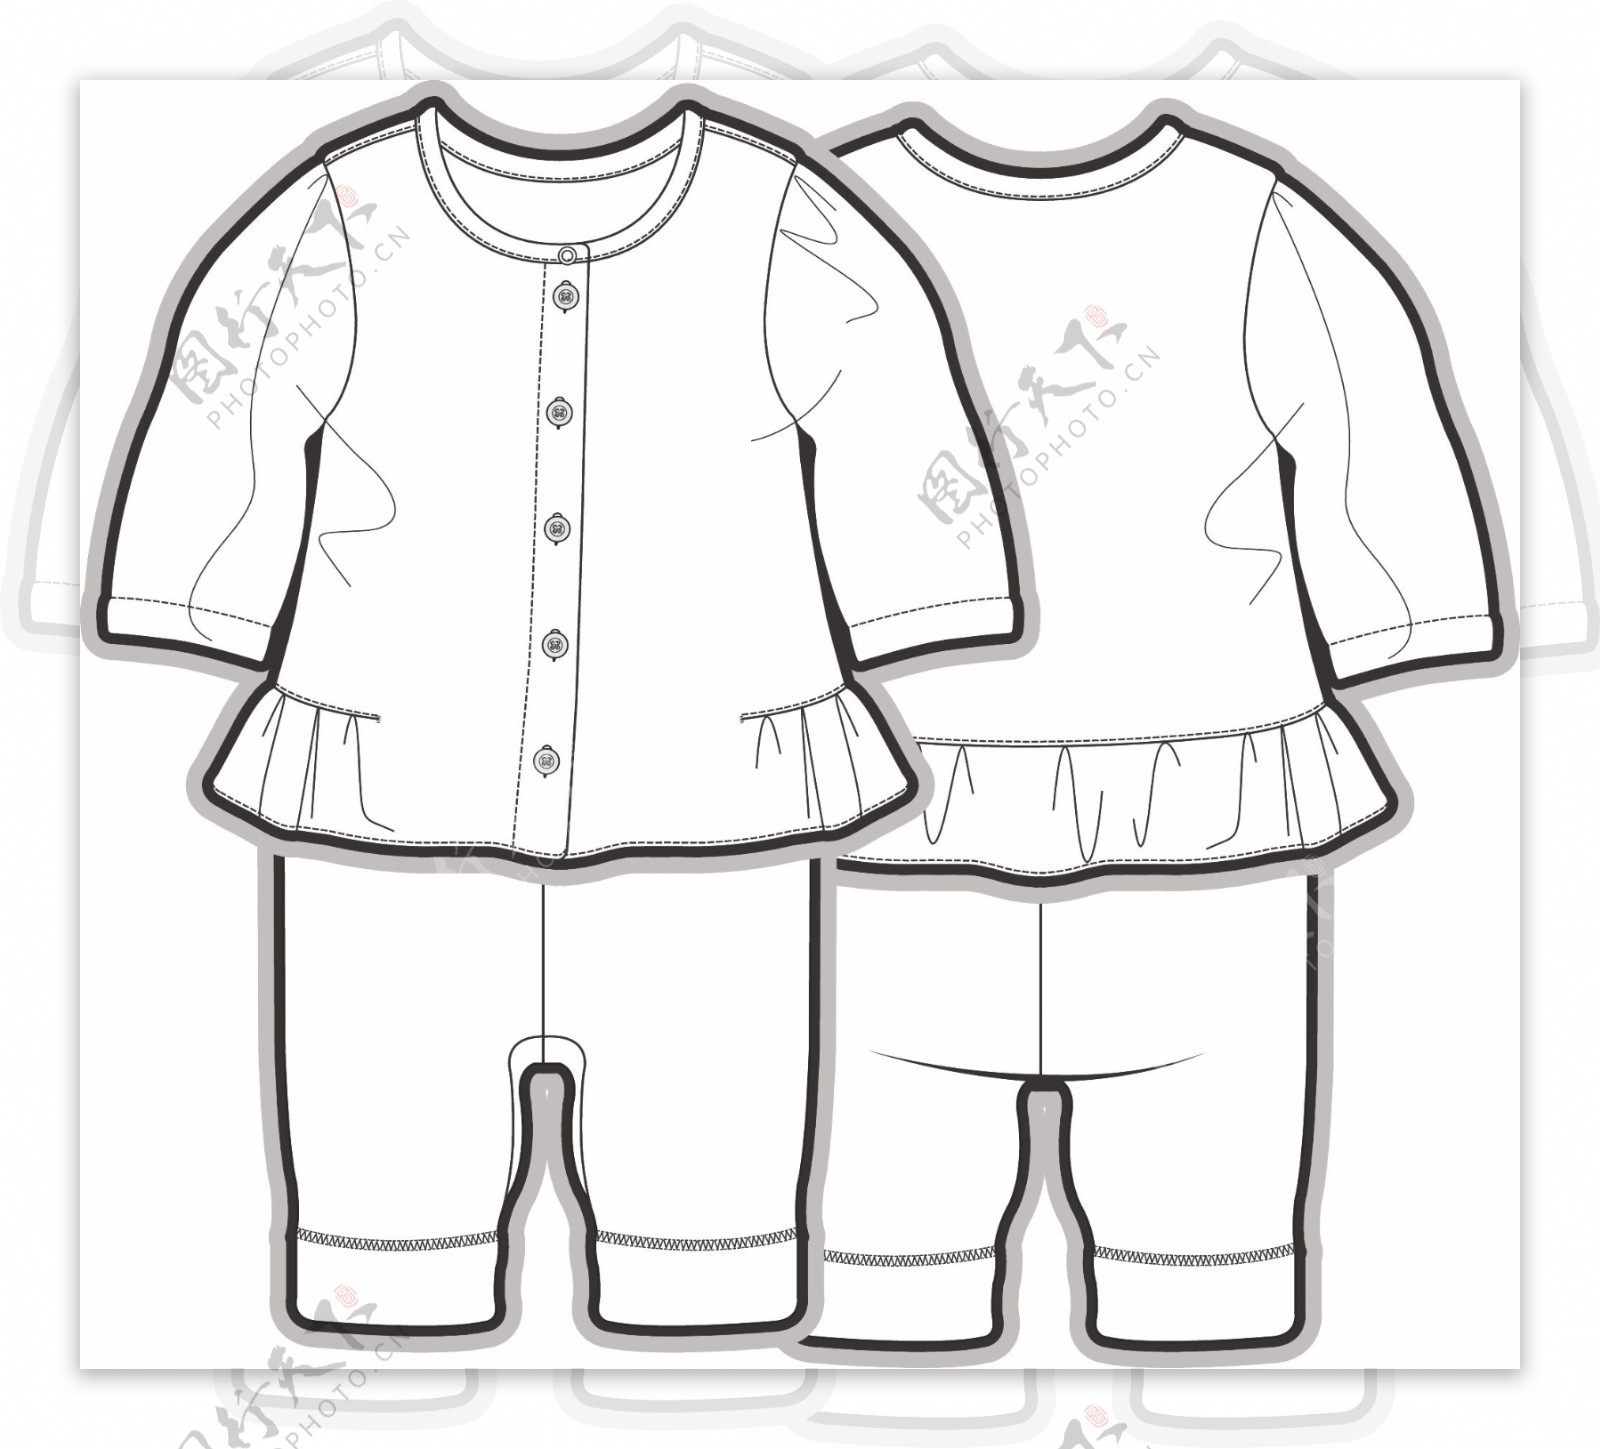 长袖套装小宝宝黑白服装线稿矢量设计素材